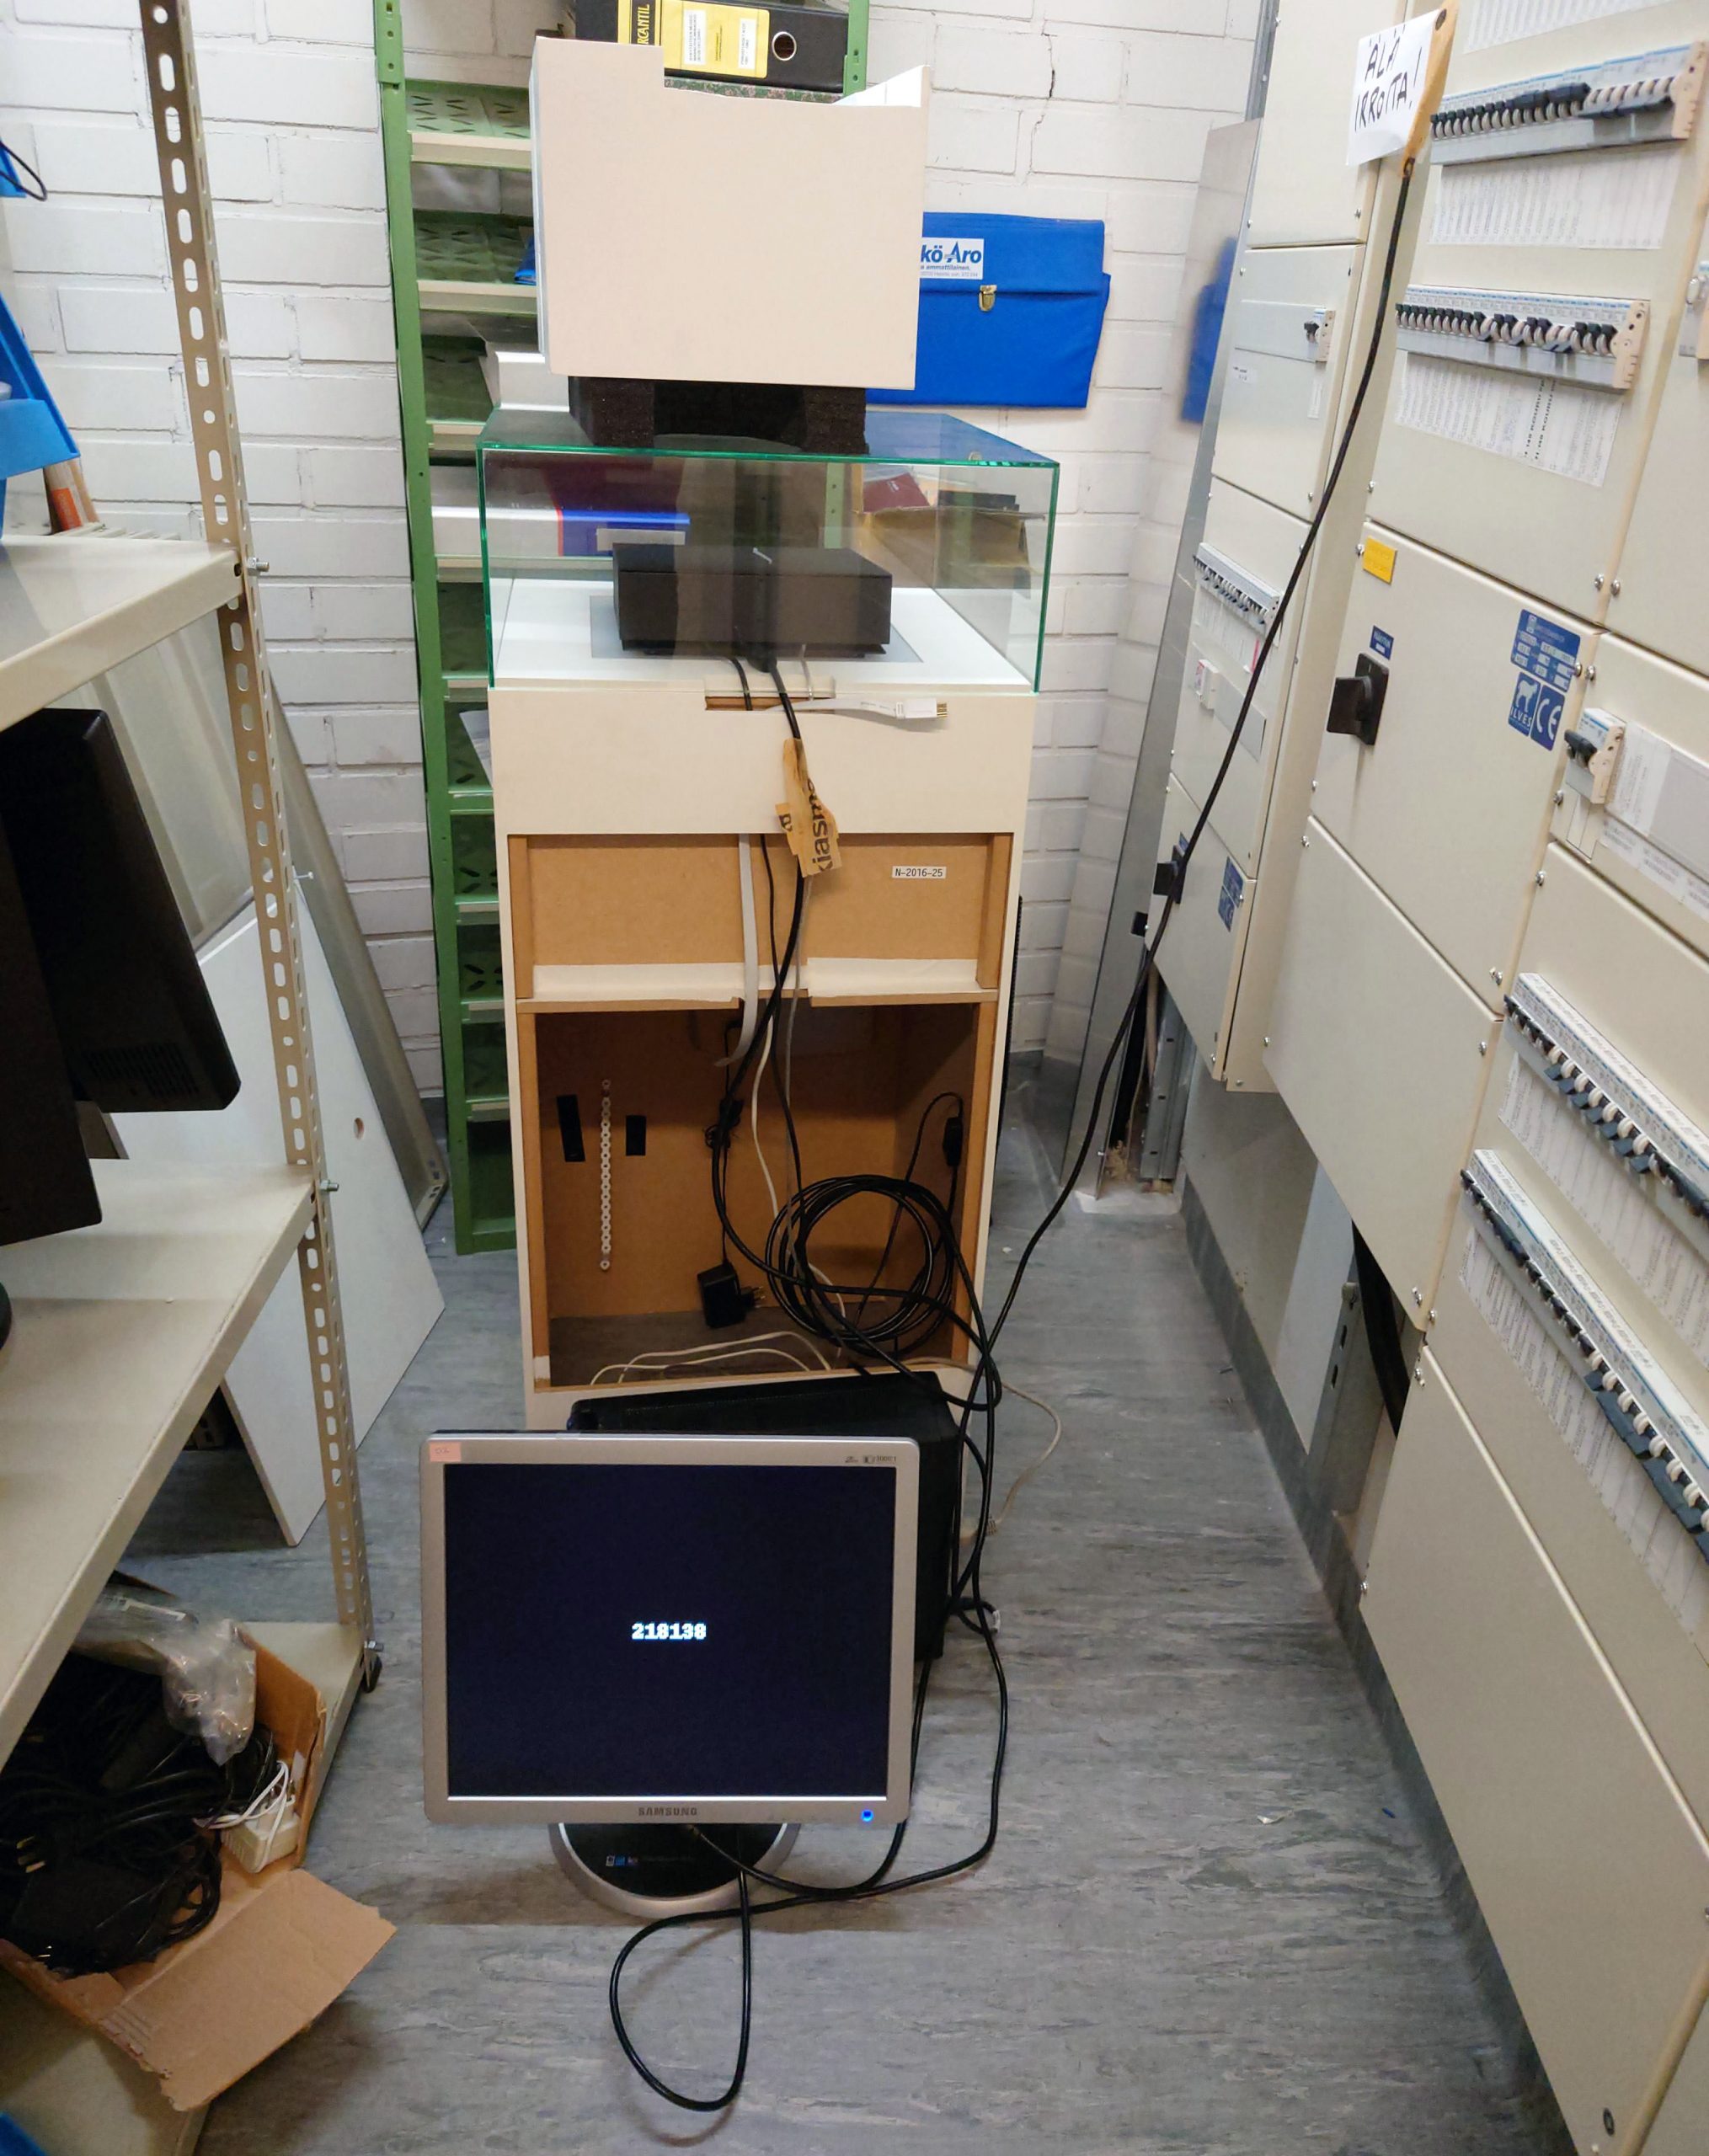 Harmaalla lattialla oleva tietokoneen näyttö, jossa musta tausta ja valkoinen numerosarja keskellä. Takana kaappi, jonka päällä lasivitriini, jonka sisällä musta laatikko. Lasivitriinin päällä on valkoinen laatikko. Oikealla sähkökaappeja ja vasemmalla varastohyllyjä.